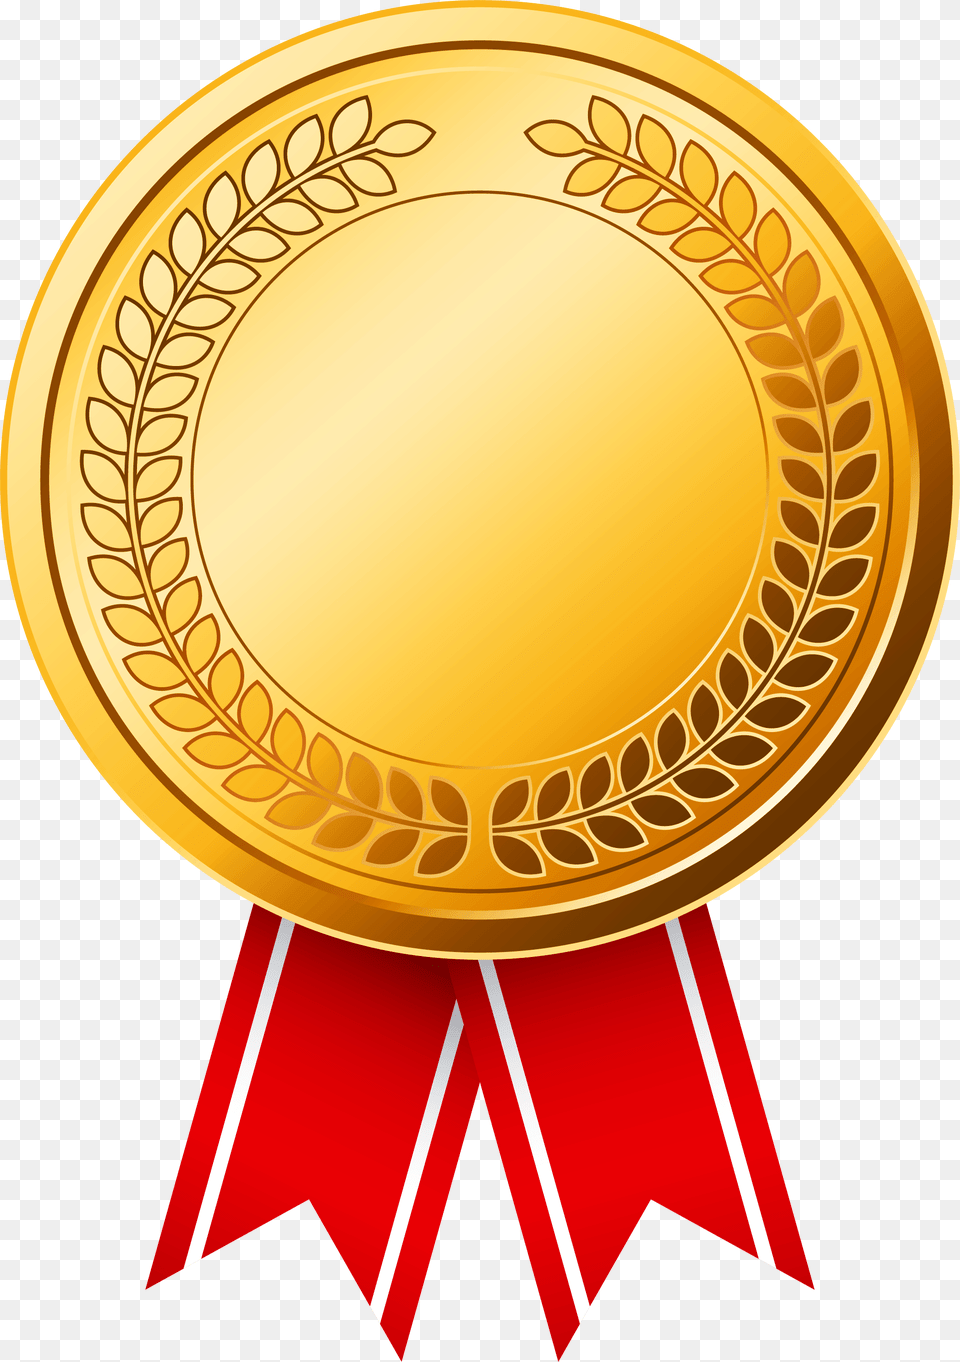 Gold Medal Certified Medal Image, Gold Medal, Trophy, Disk Png